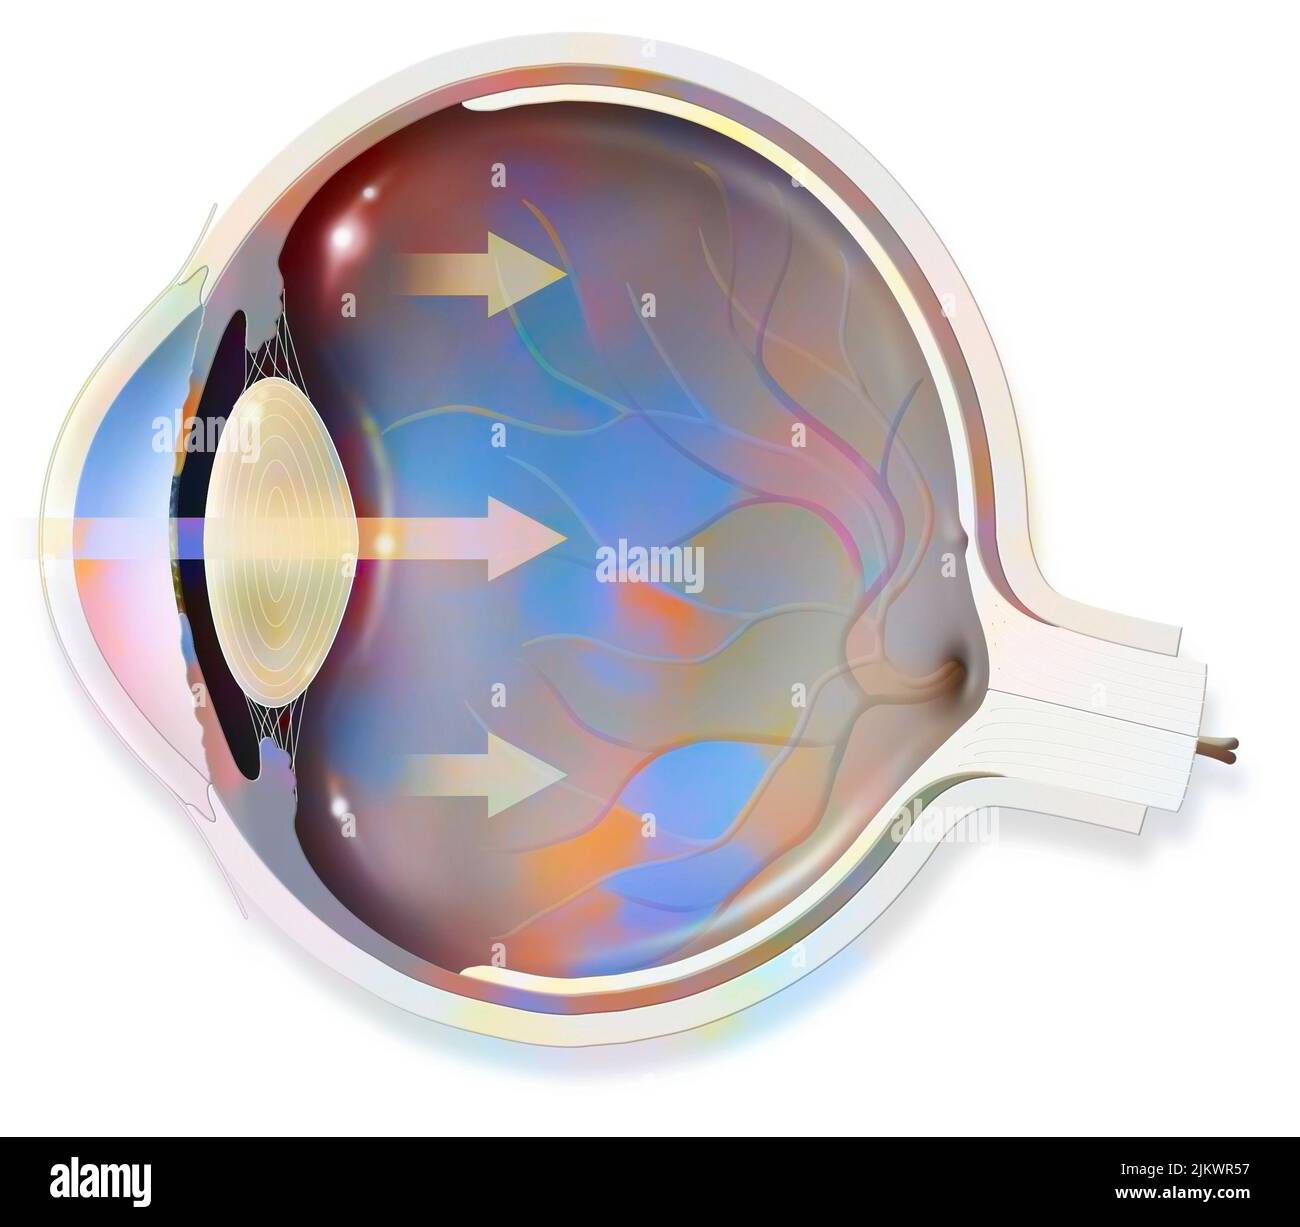 Anatomia dell'occhio le cui frecce rappresentano la luce e rivelano la lente, retina, cornea, iride, coroide. Foto Stock